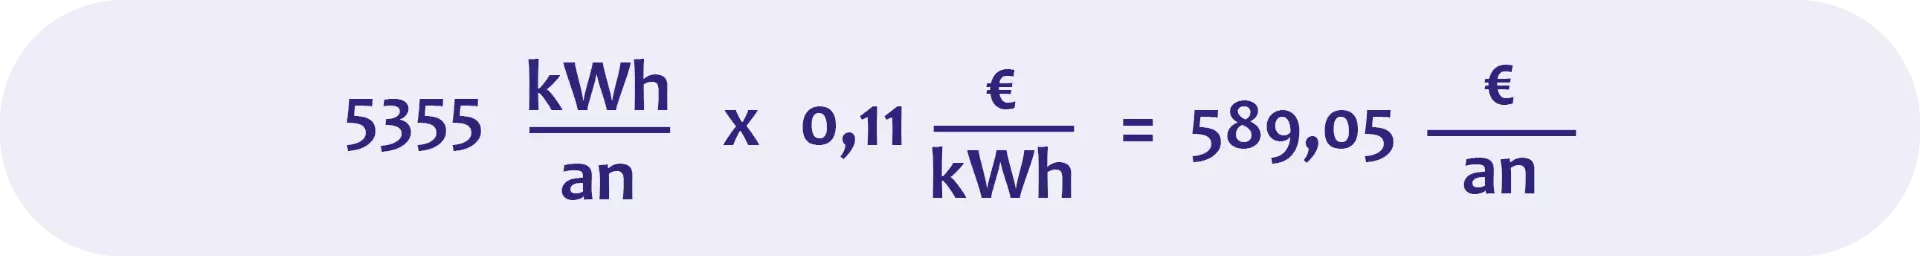 Une consommation d’énergie plus faible implique également des frais d’électricité plus faibles.